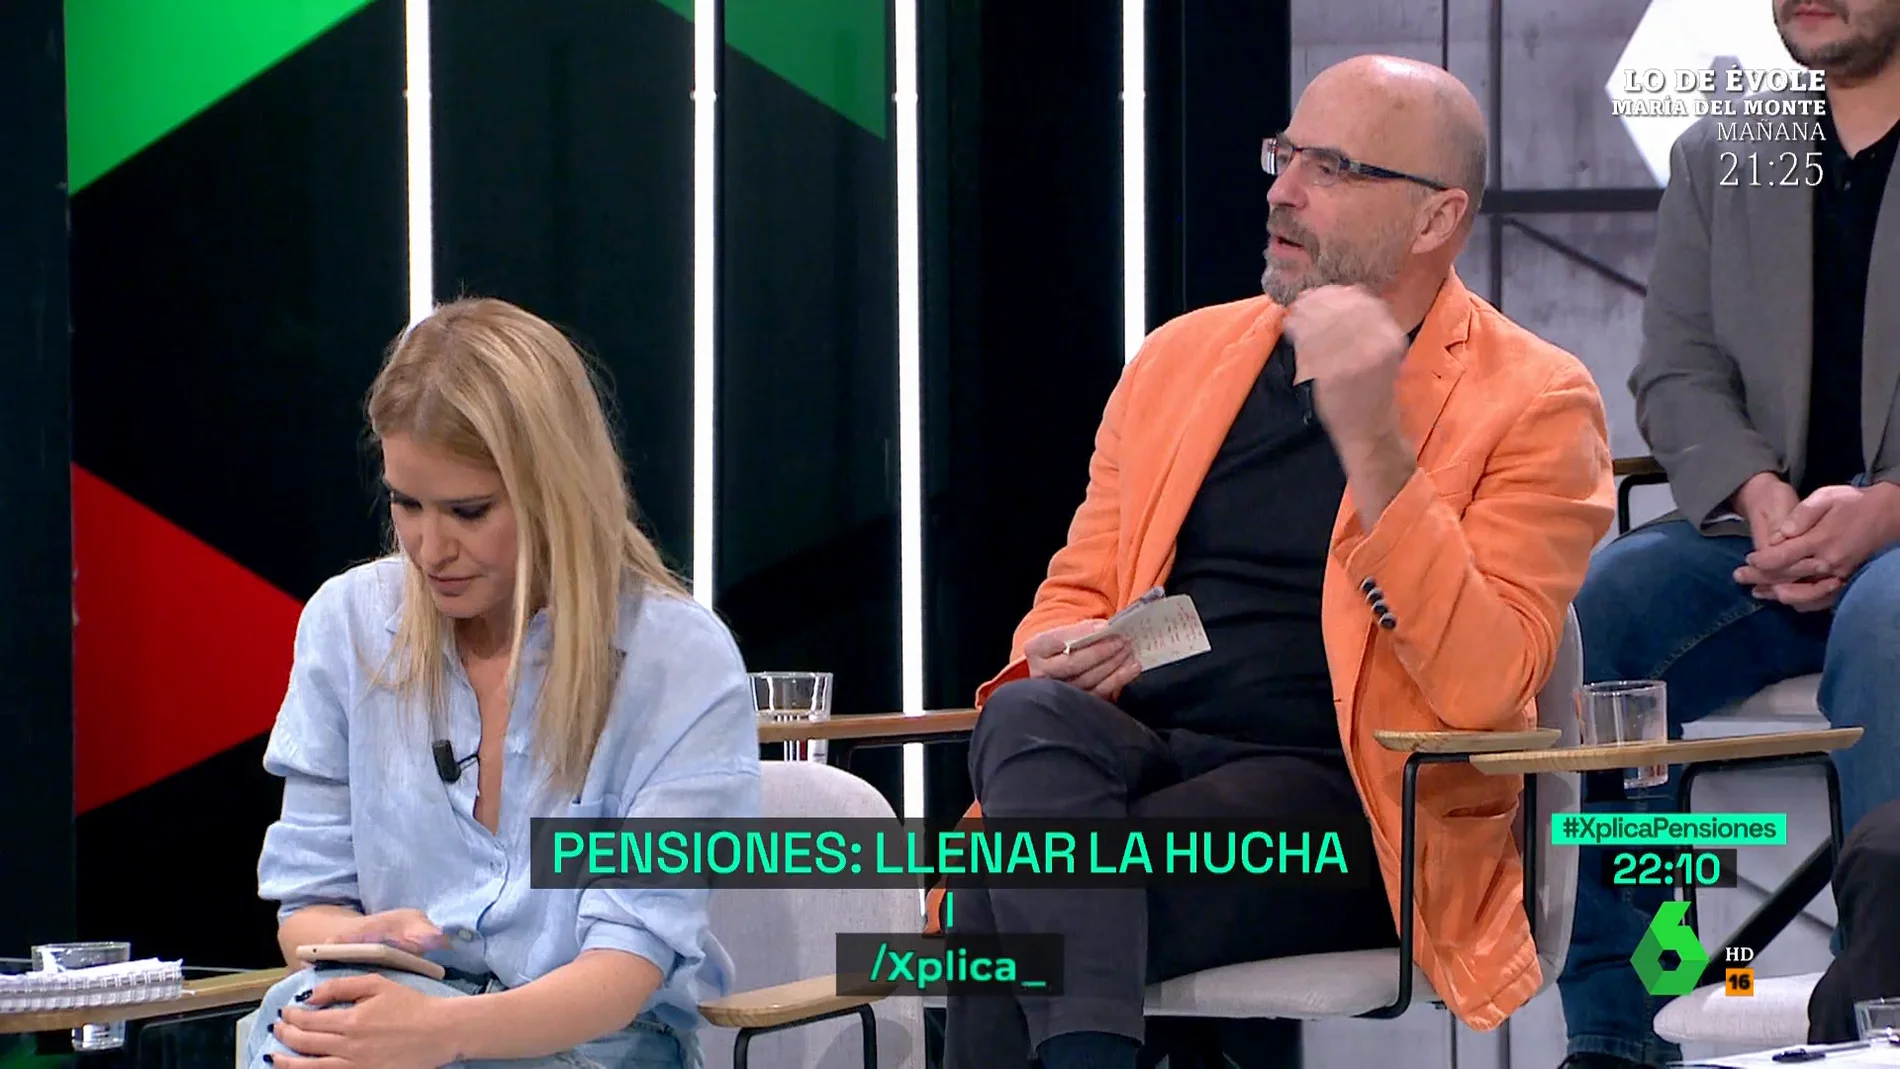 El análisis de Javier Díaz-Giménez sobre las pensiones: "Las cotizaciones no pueden pagarlas, el sistema está quebrado"